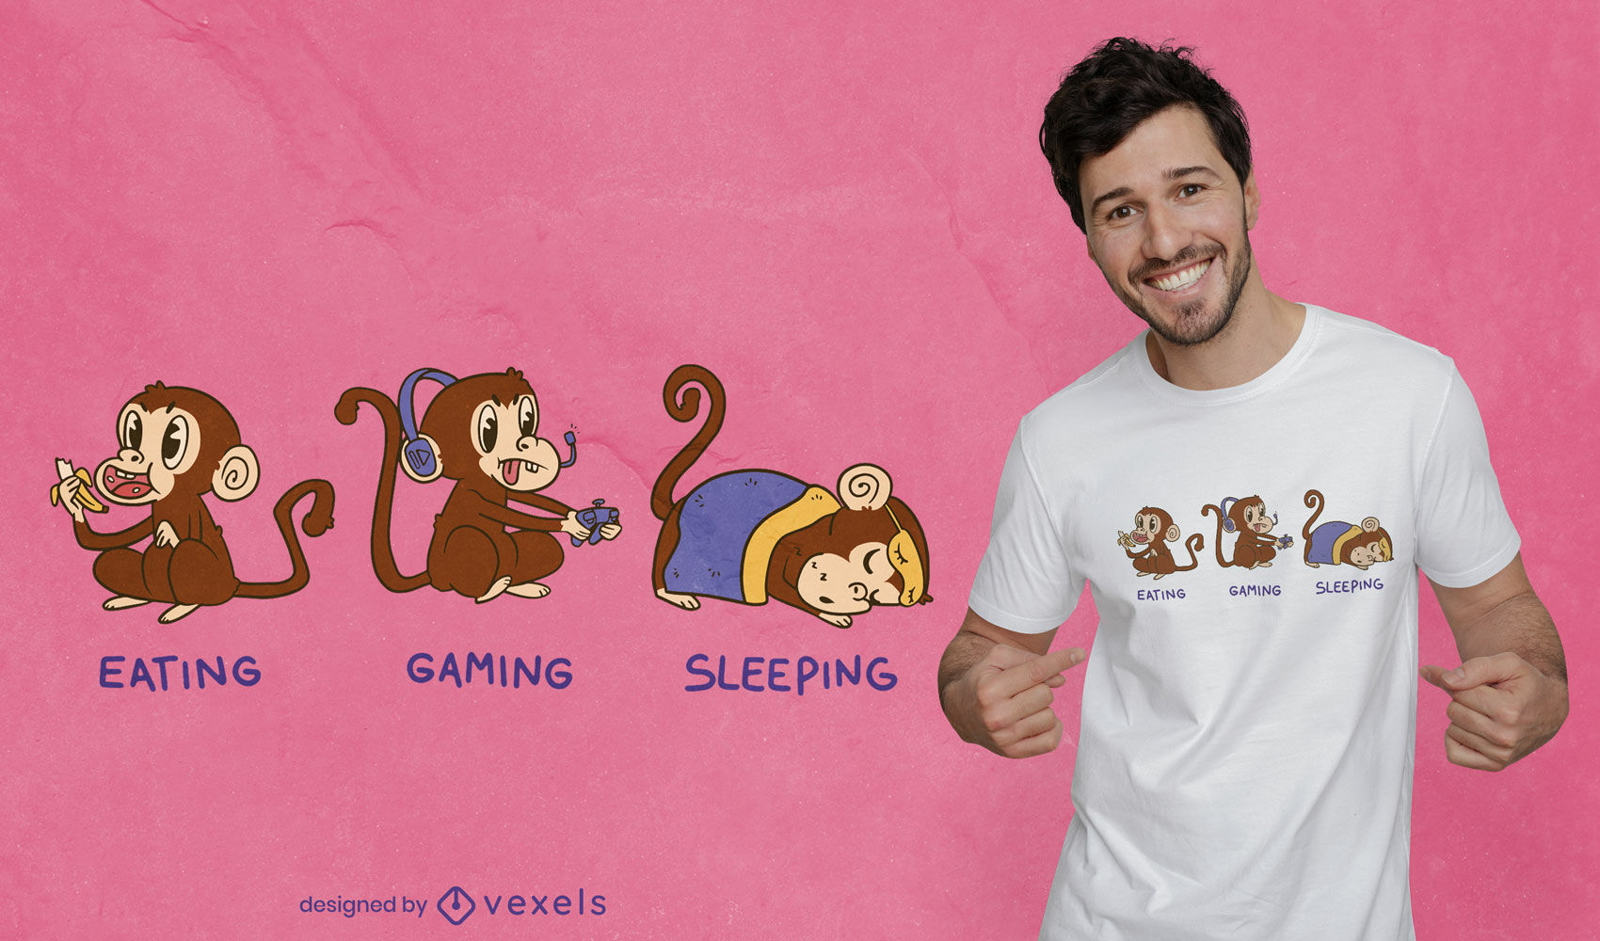 Eating gaming sleeping monkeys t-shirt design